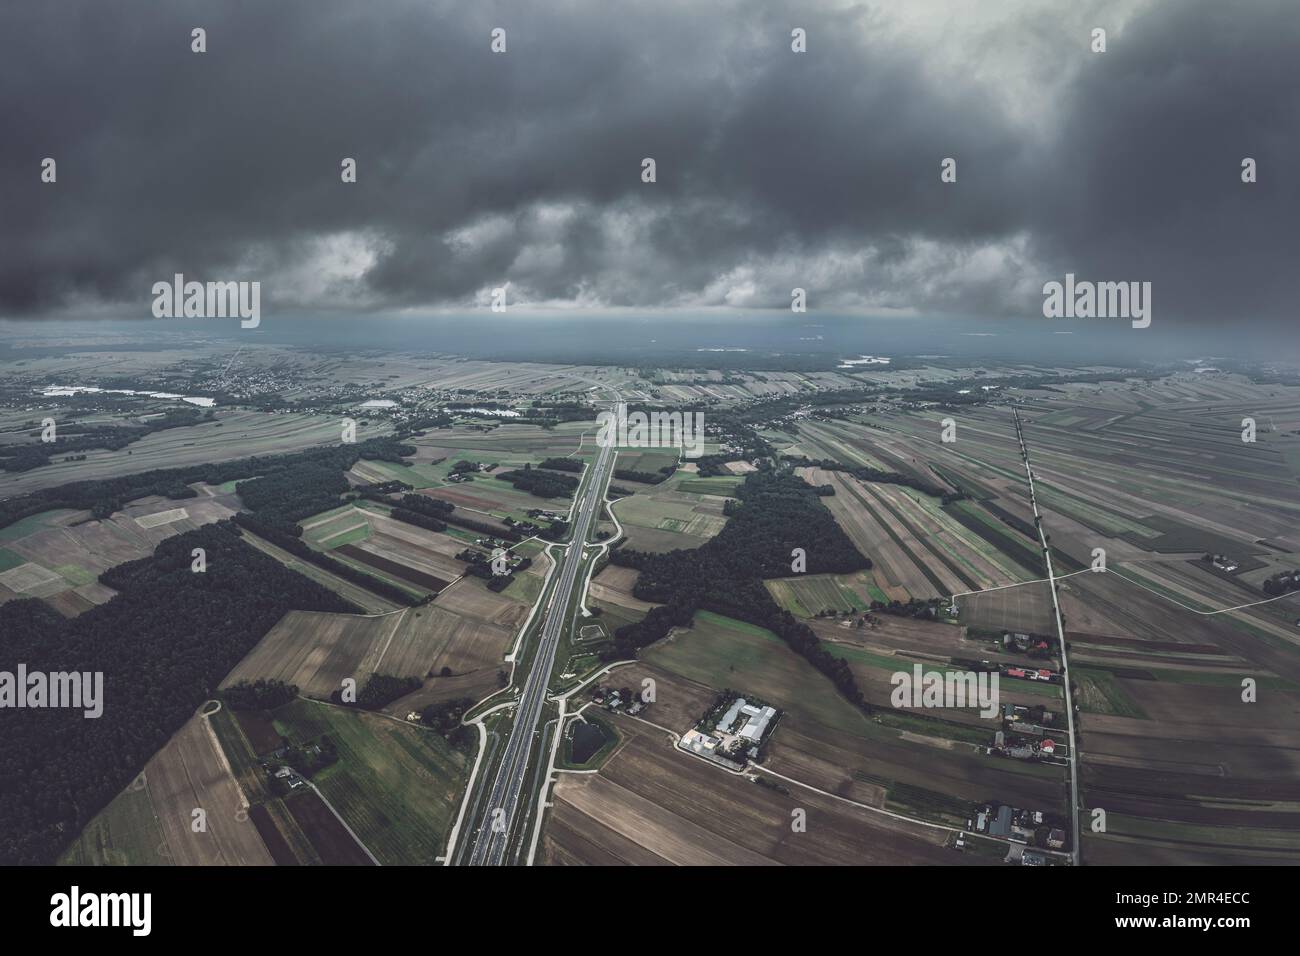 Schwindende Luftperspektive von zweispurigen Autobahnen unter bewölktem, launischem Himmel Stockfoto